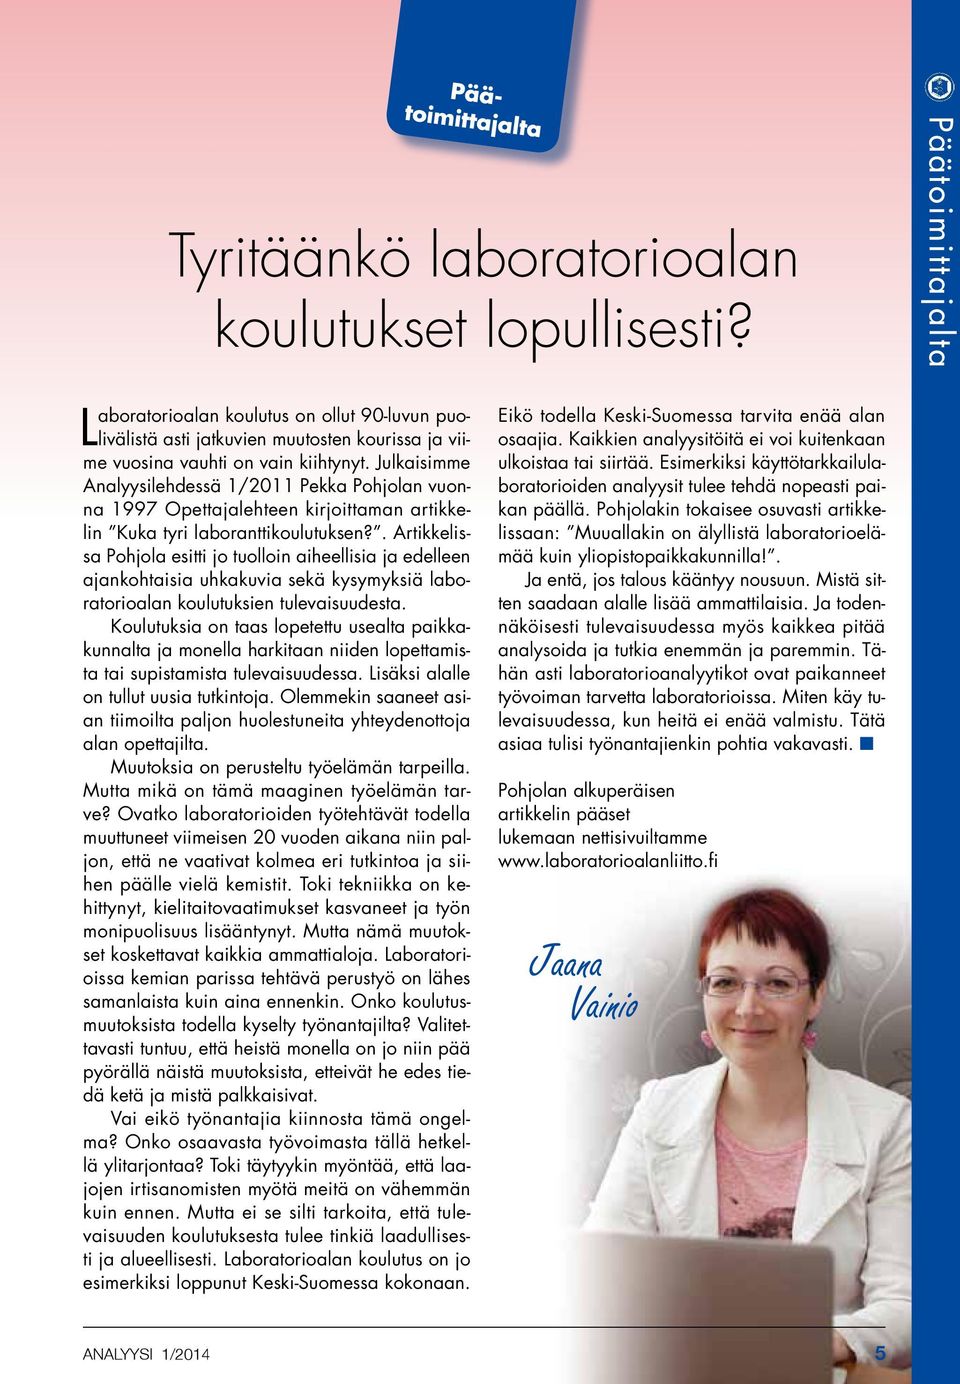 Julkaisimme Analyysilehdessä 1/2011 Pekka Pohjolan vuonna 1997 Opettajalehteen kirjoittaman artikkelin Kuka tyri laboranttikoulutuksen?